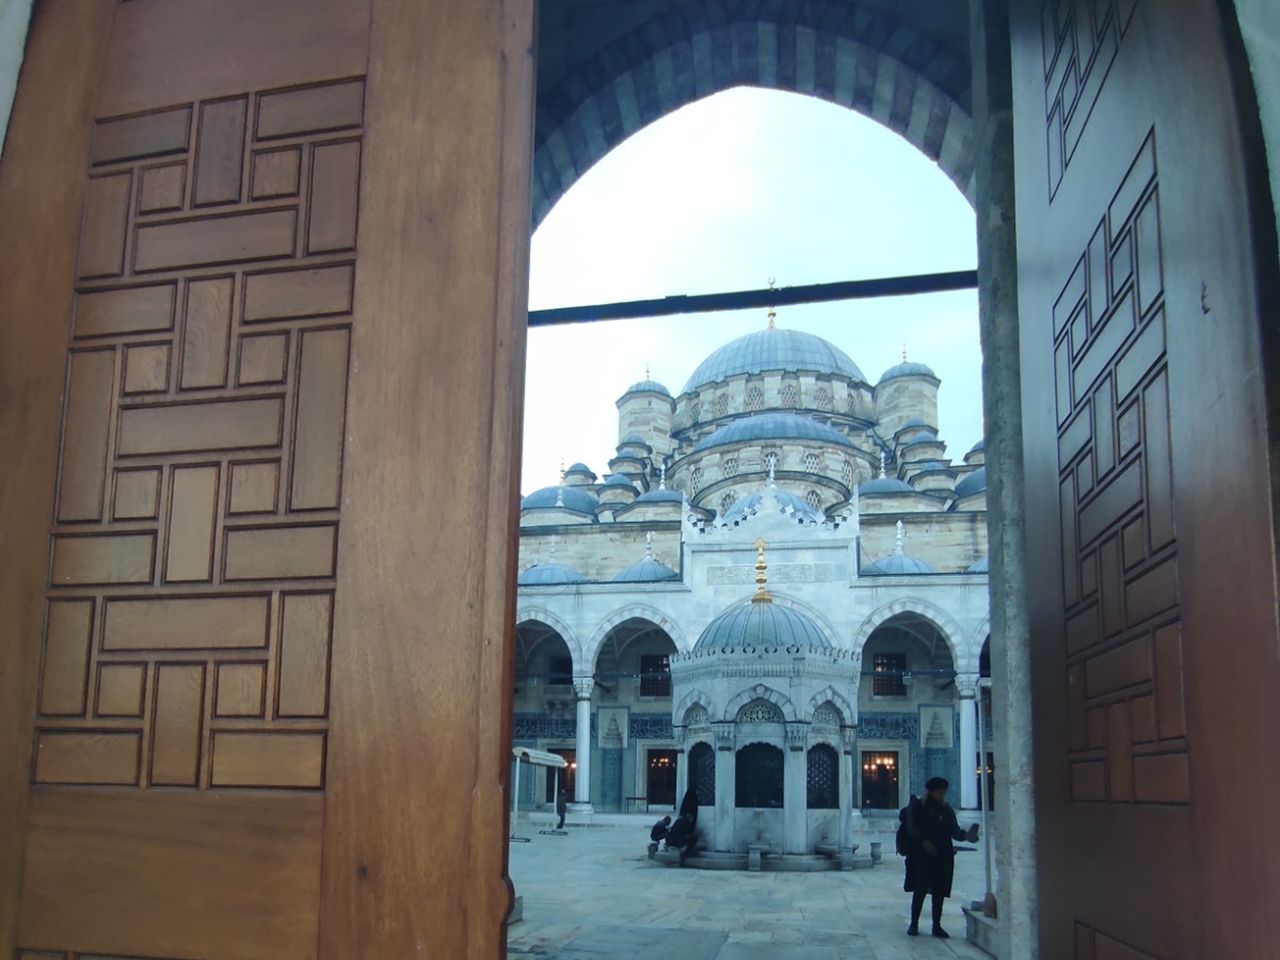 На стыке 2-х культур: европейский восток Стамбула | Цена 120€, отзывы, описание экскурсии